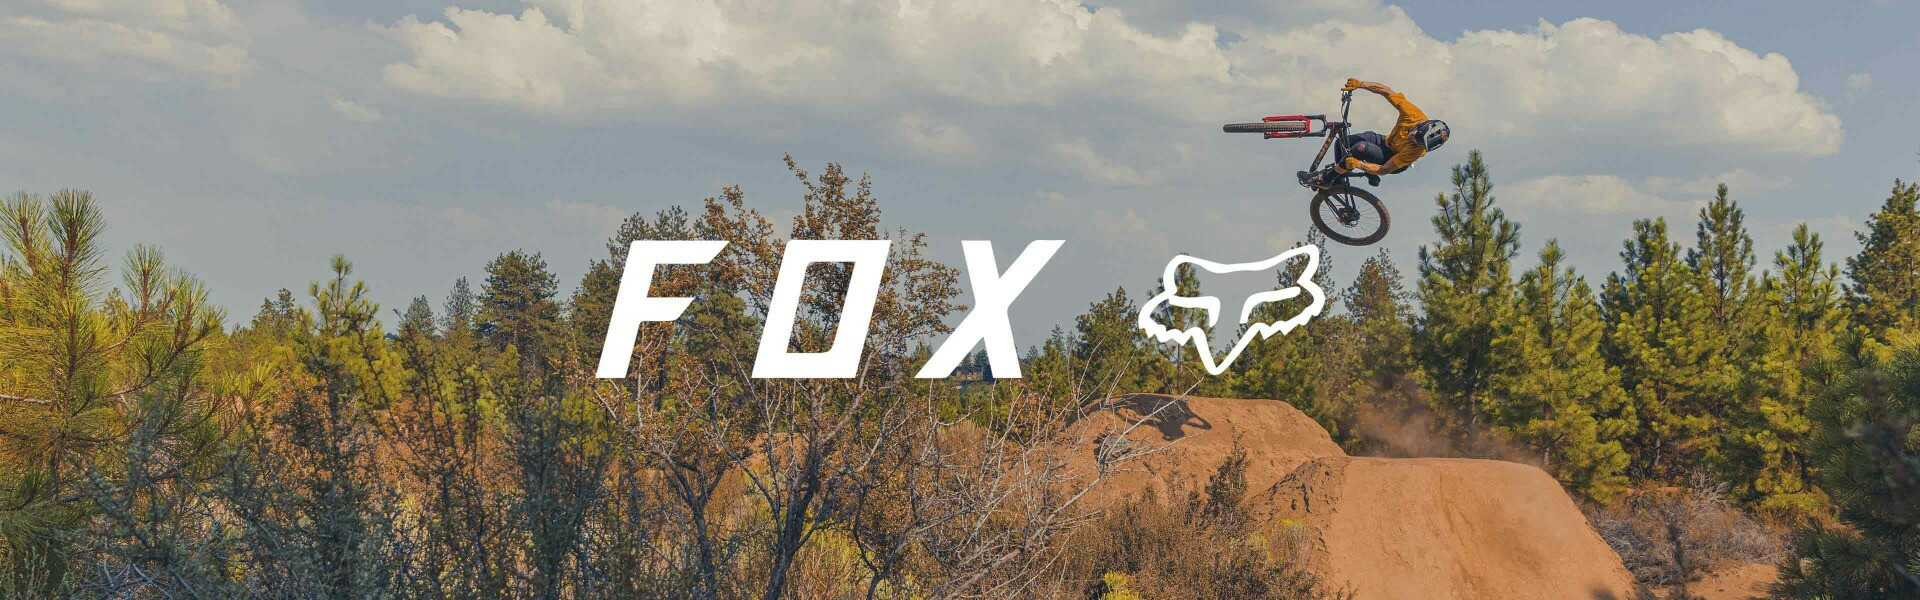 Ochraniacze Fox Racing